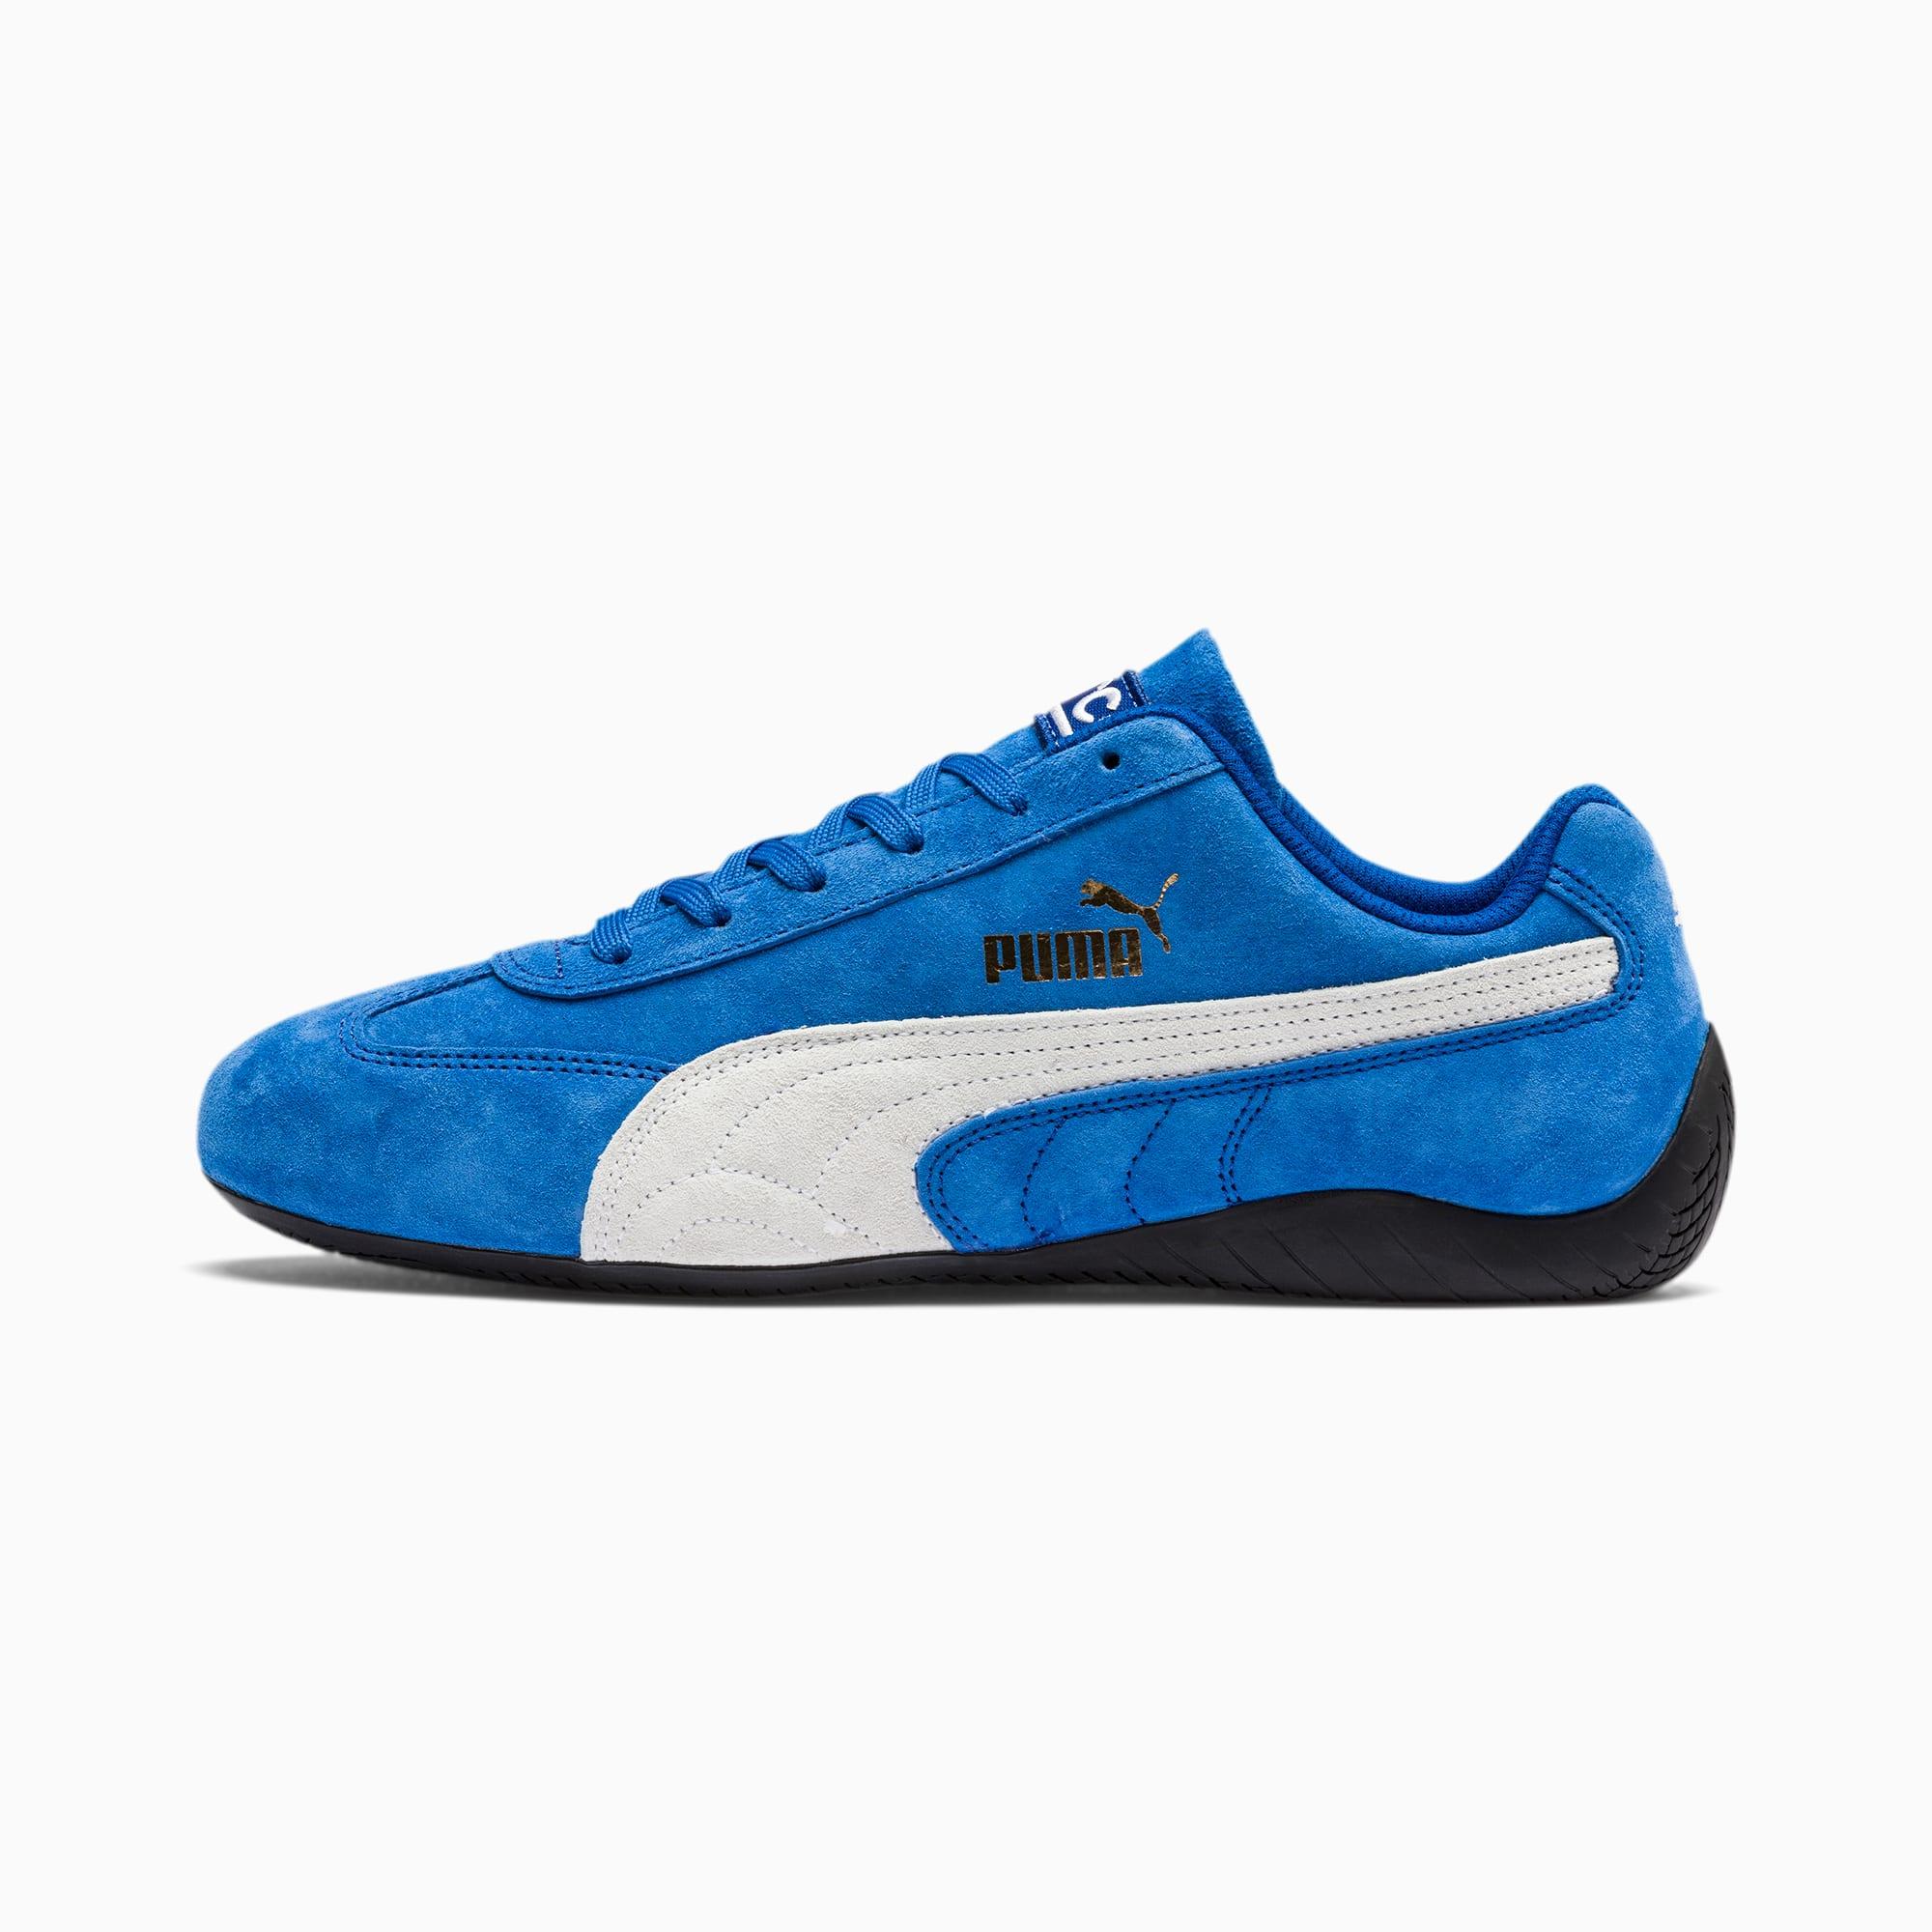 PUMA Suede Speedcat Og Sparco Motorsport Shoes in Blue for Men - Lyst